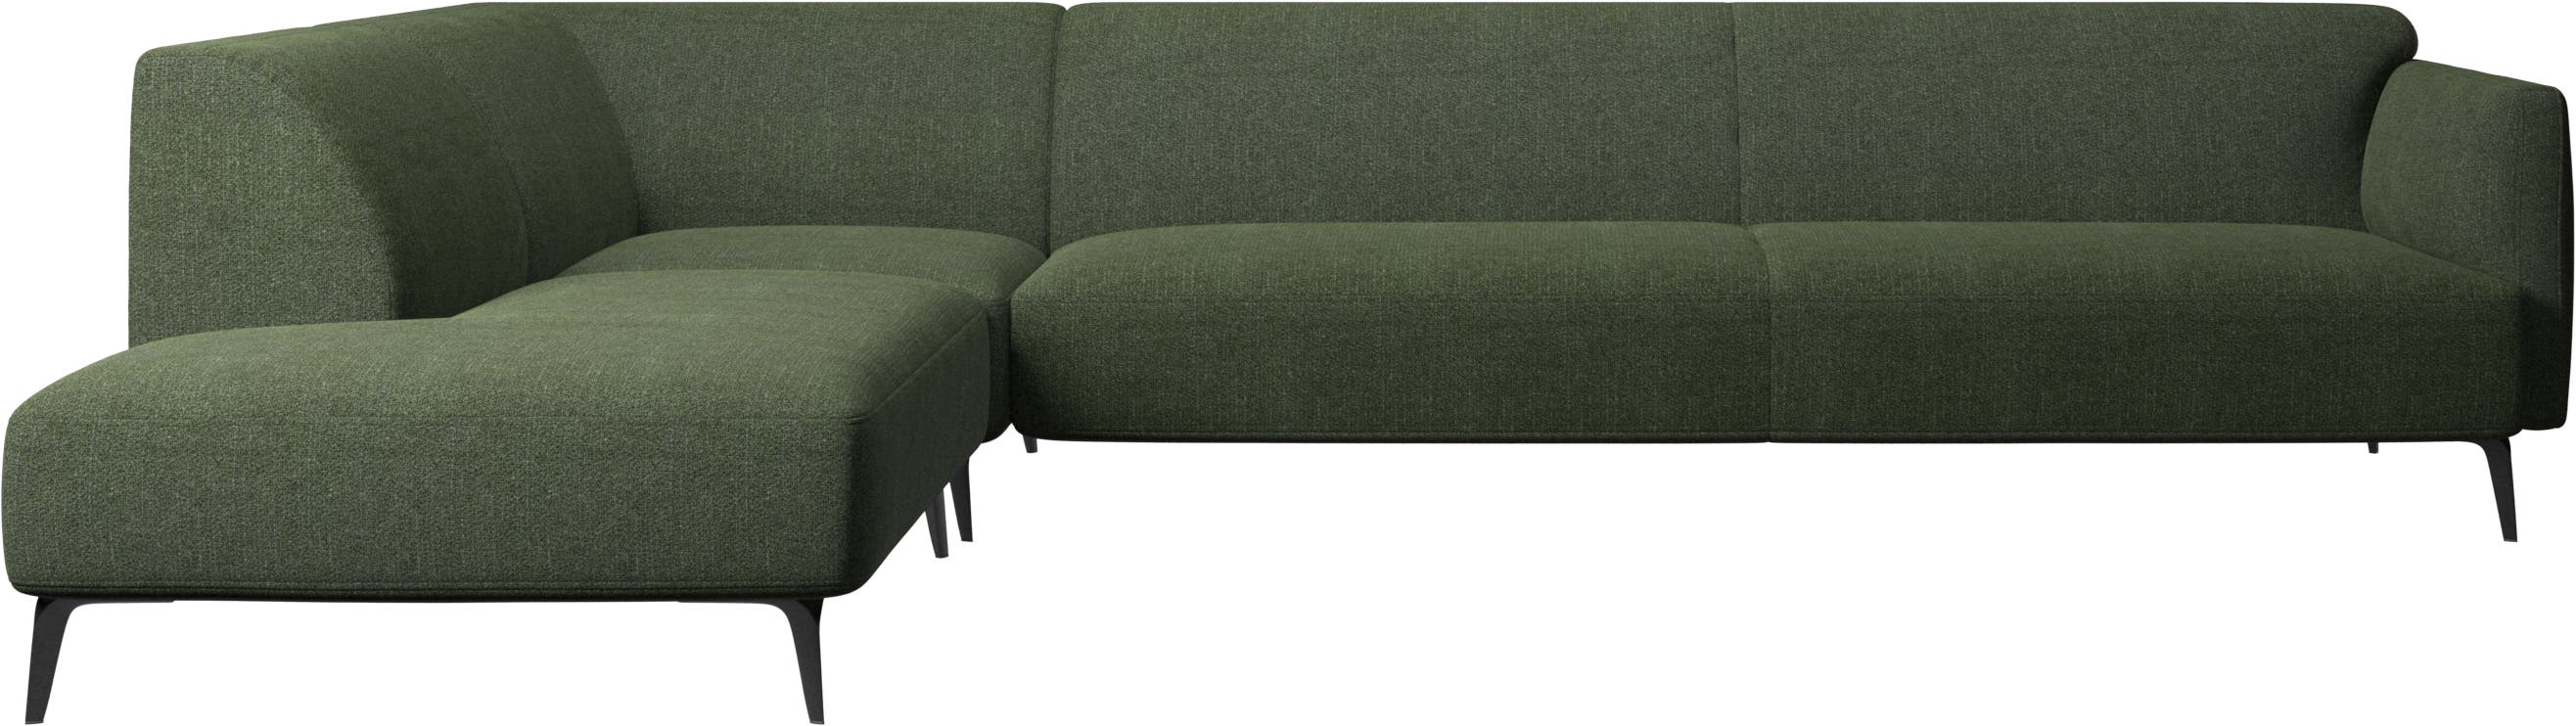 Sofa narożna Modena z szezlongiem